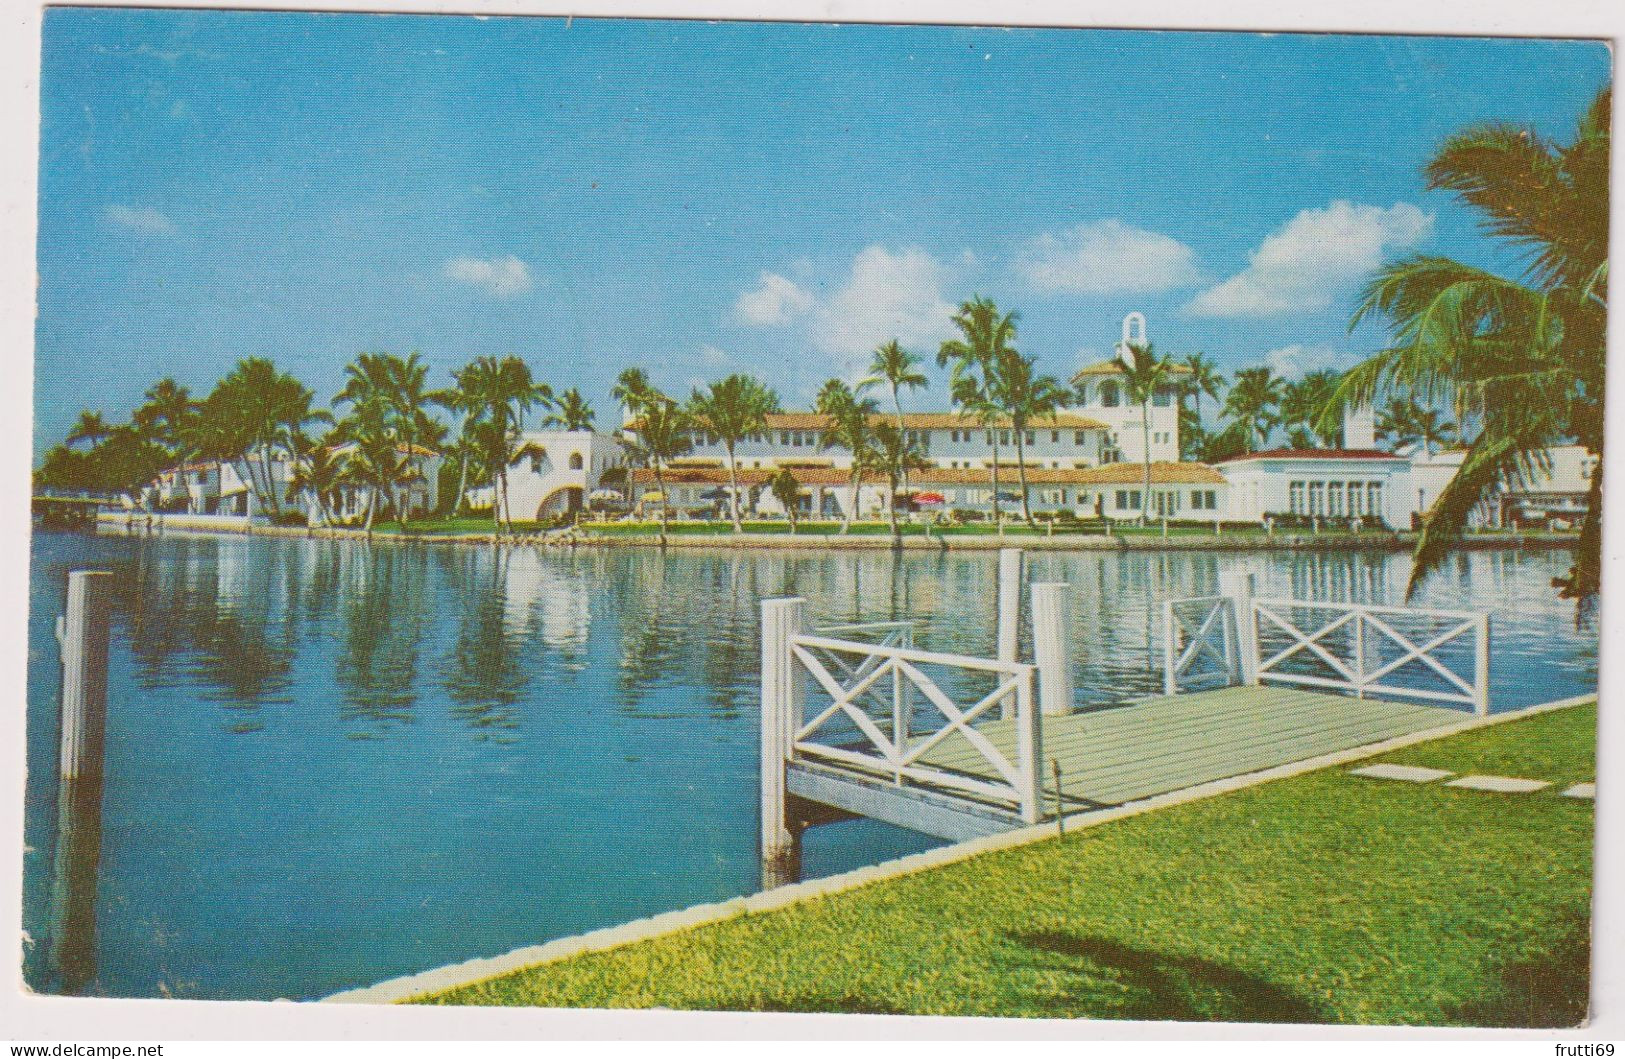 AK 198066 USA - Florida - Miami Beach - Miami Beach